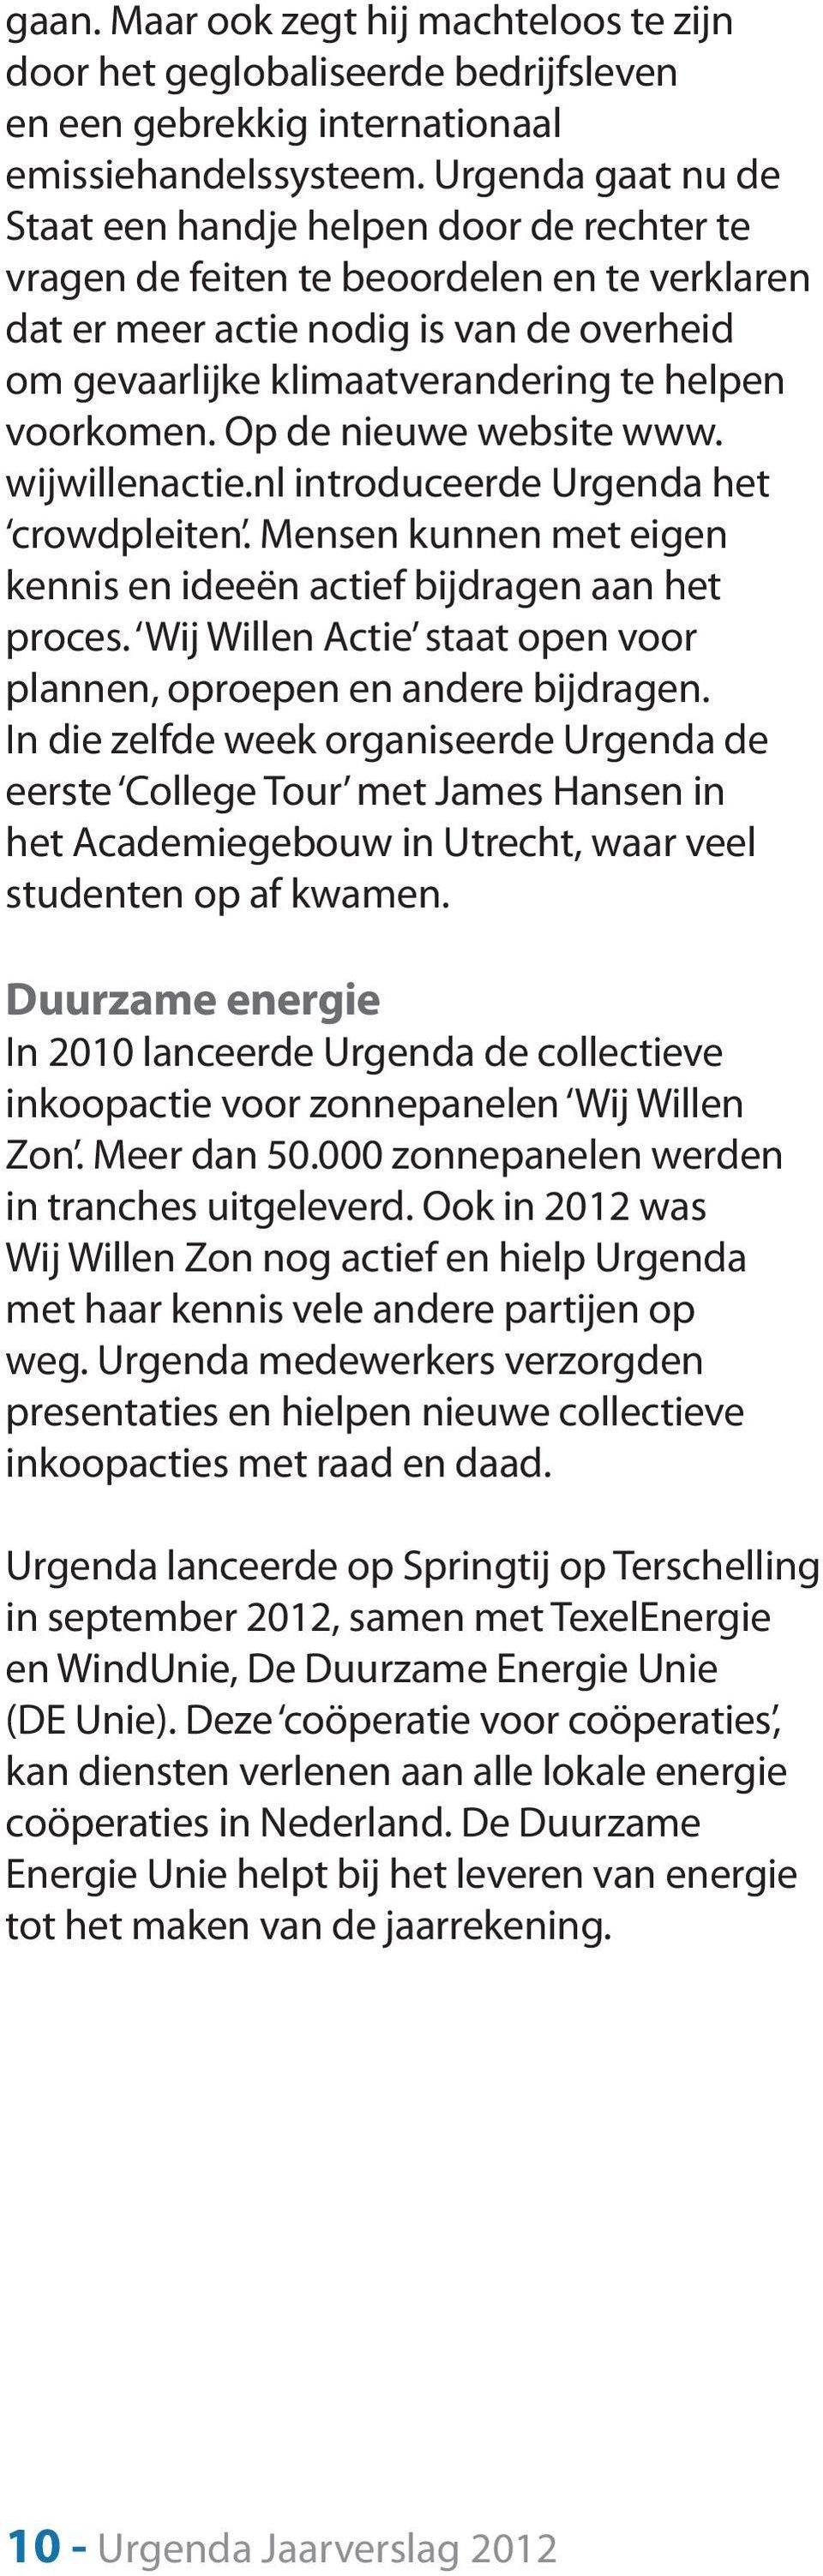 voorkomen. Op de nieuwe website www. wijwillenactie.nl introduceerde Urgenda het crowdpleiten. Mensen kunnen met eigen kennis en ideeën actief bijdragen aan het proces.